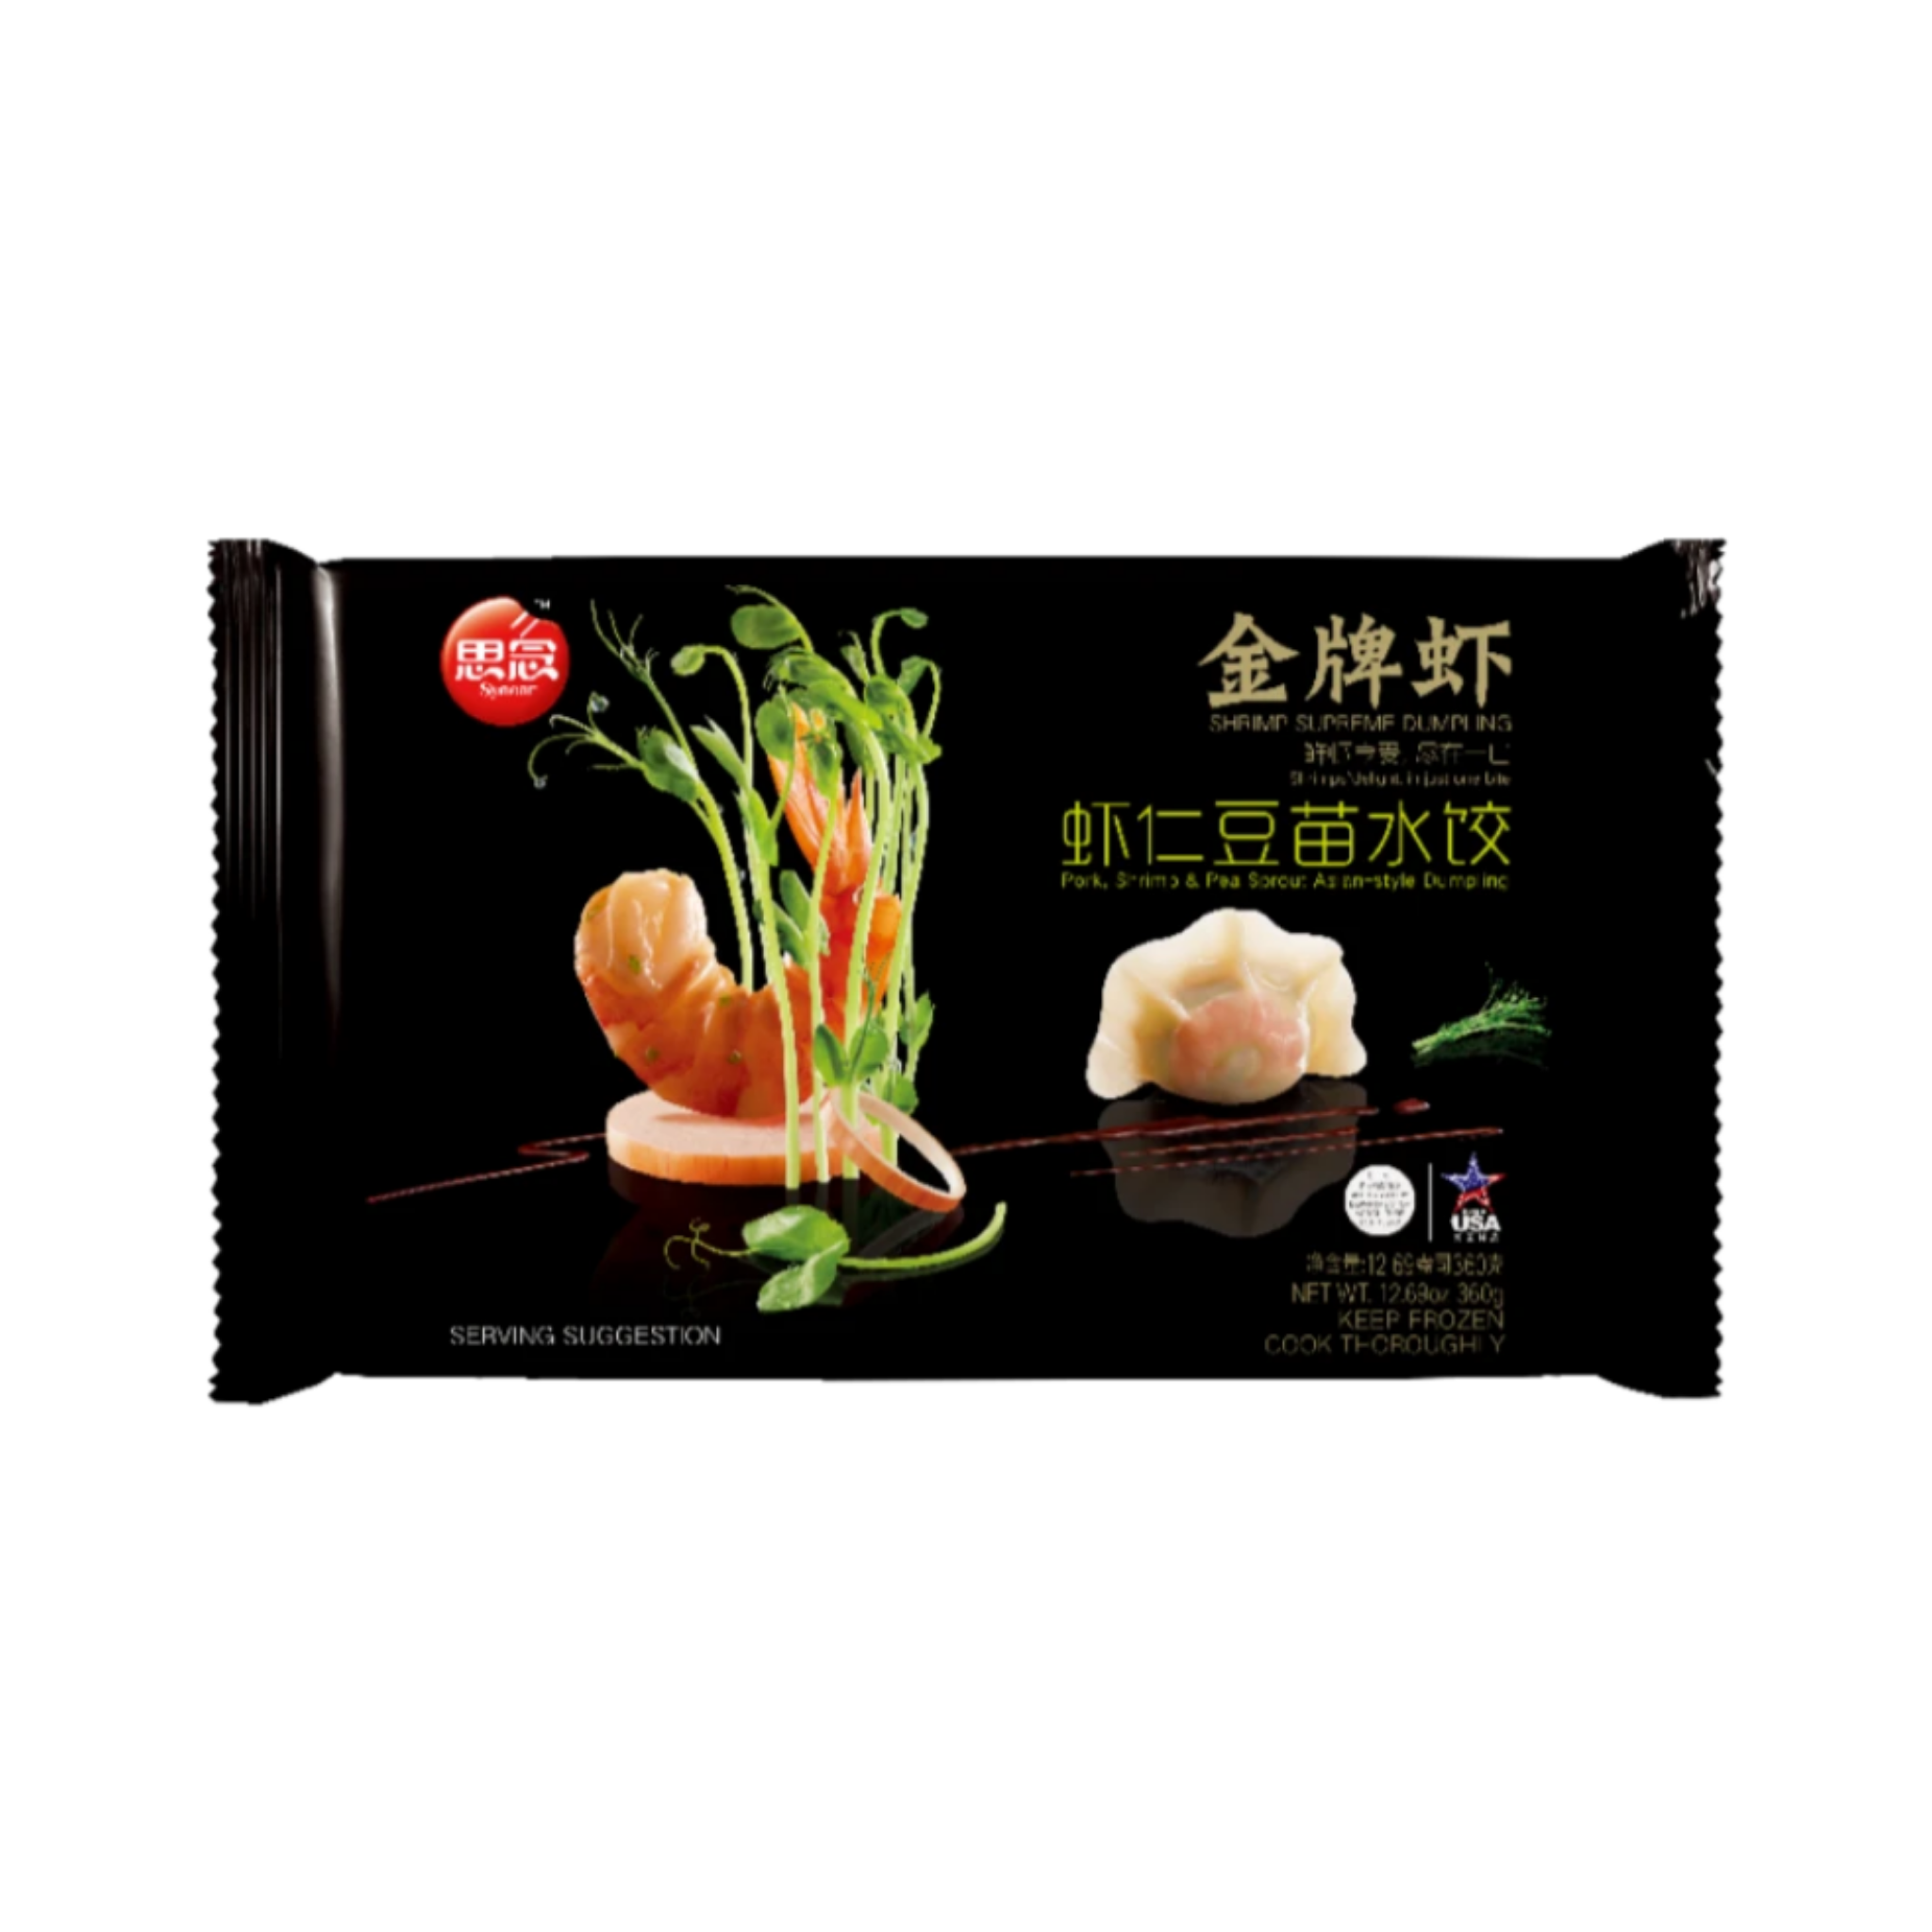 Shrimp, Pork & Pea Sprout Asian-style Dumpling 金牌虾虾仁豆苗水饺